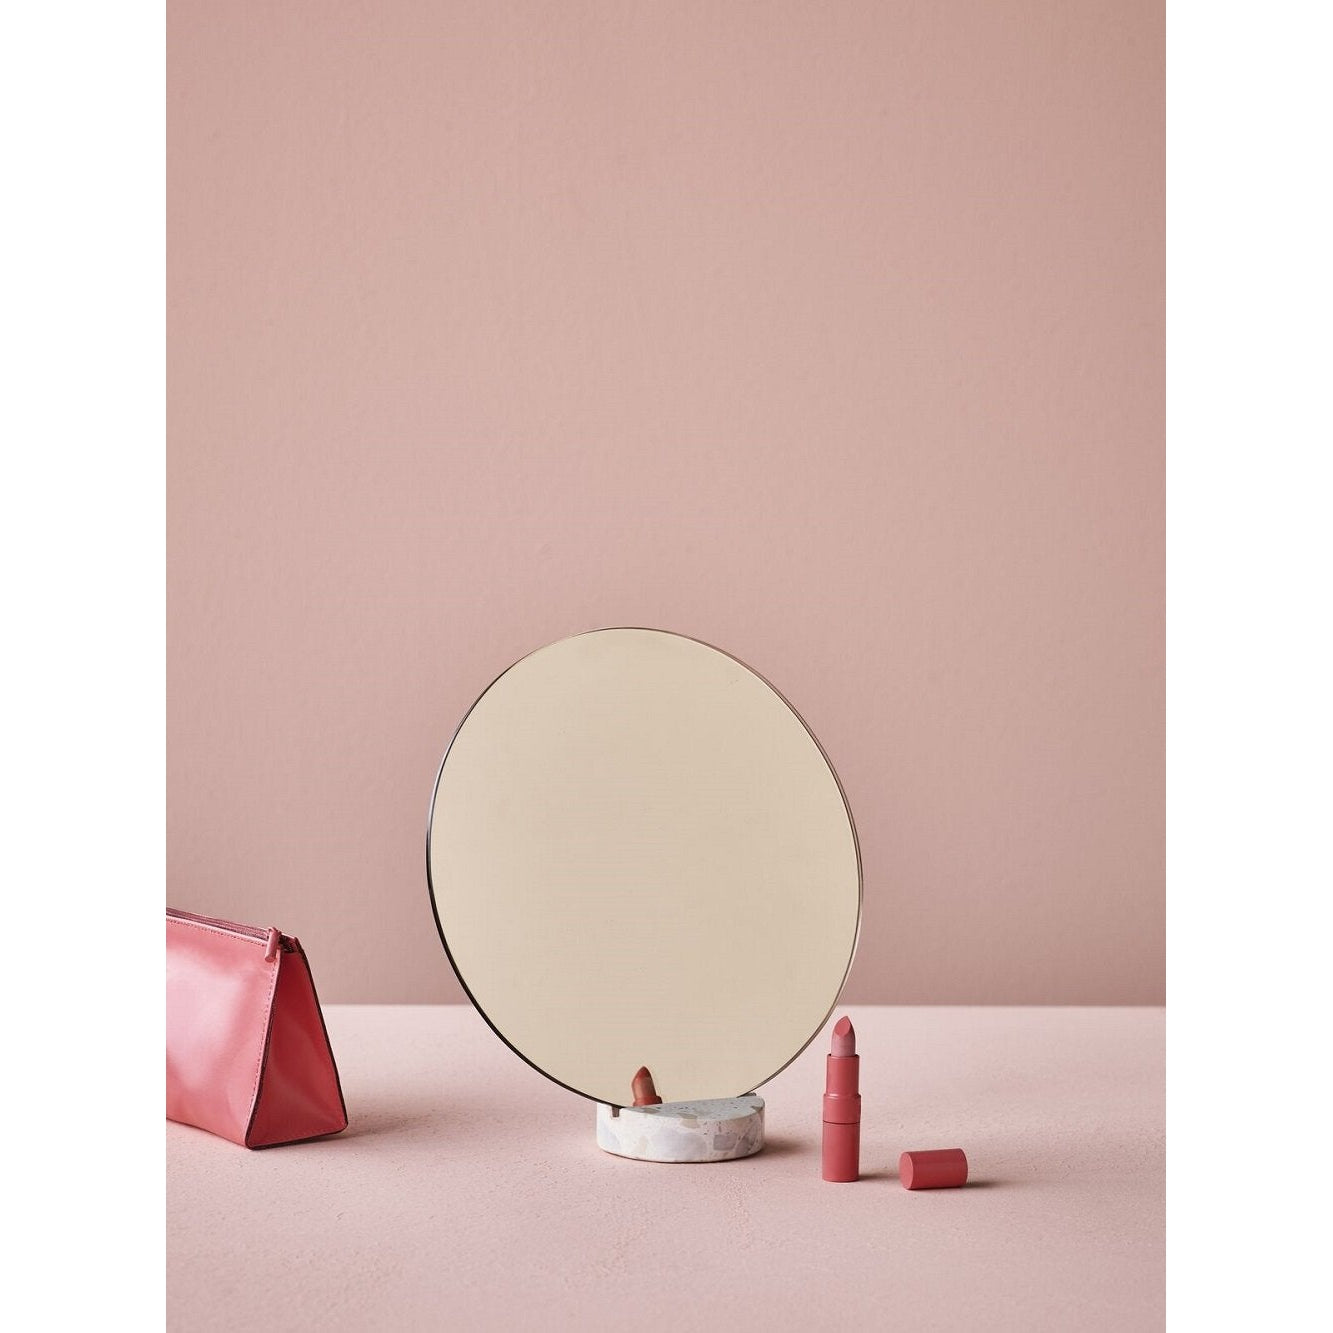 Lucie Kaas Erat spegel vit, 25 cm